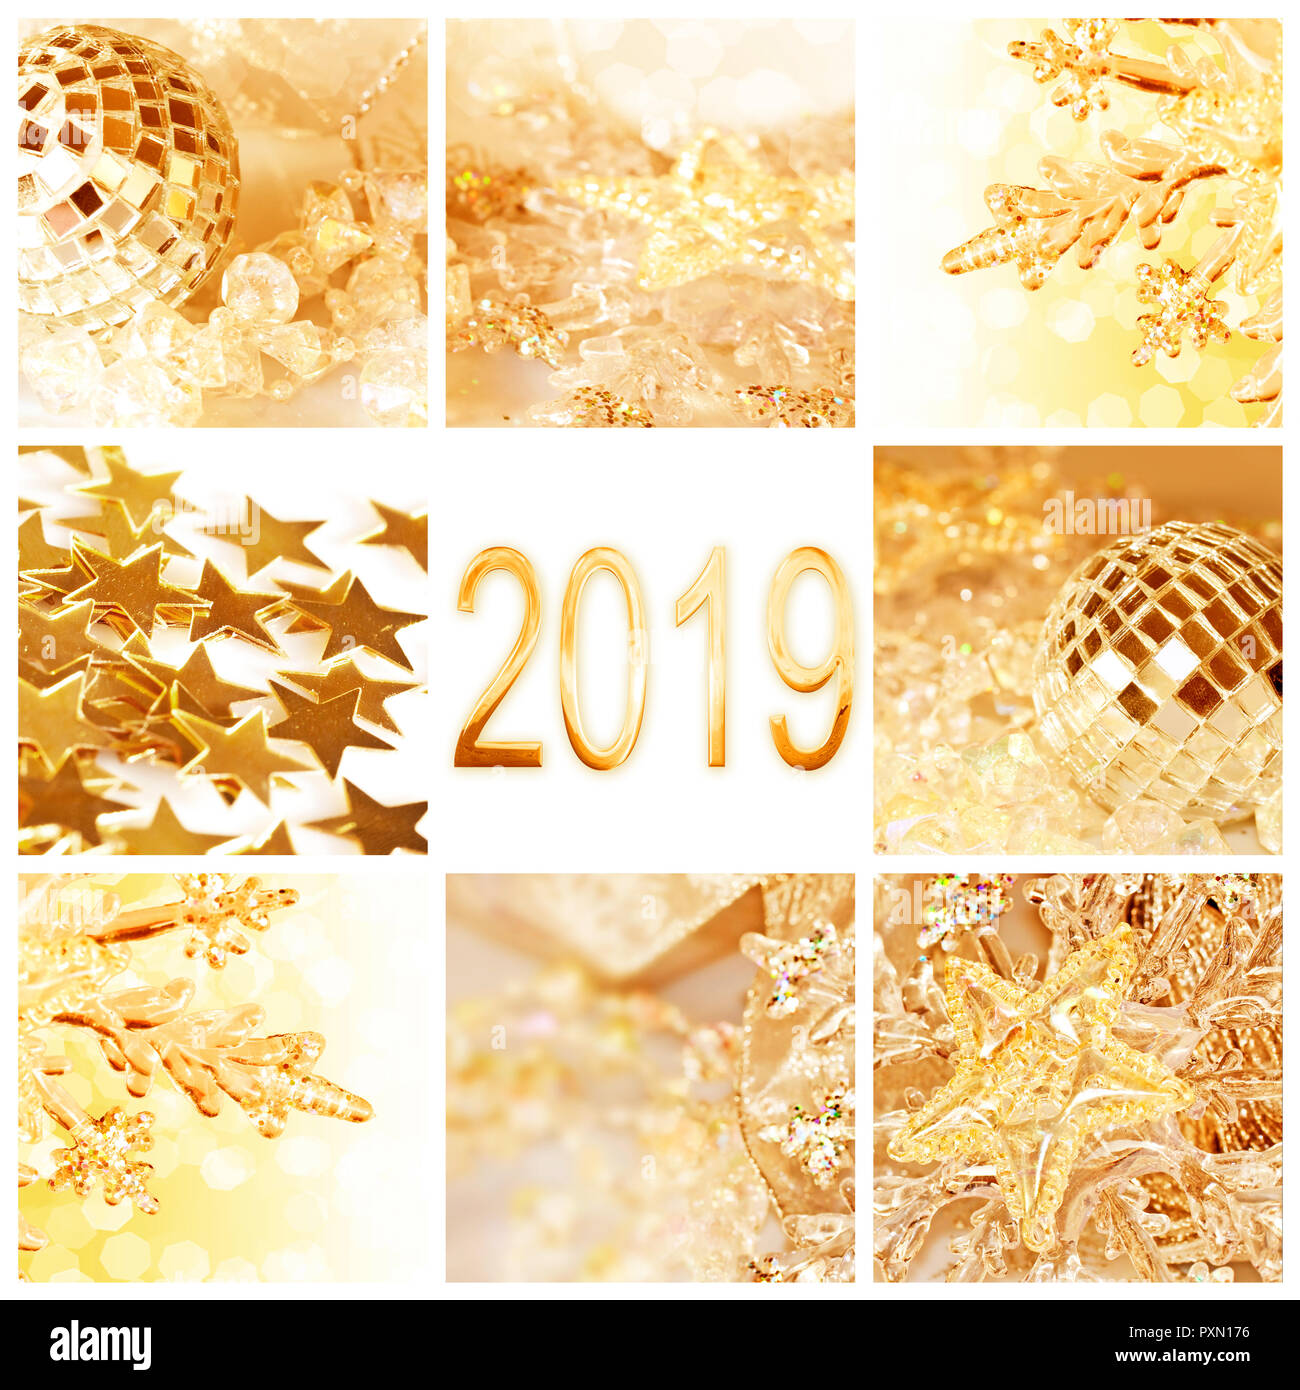 2019, Golden Ornamenti natale collage square biglietto di auguri Foto Stock